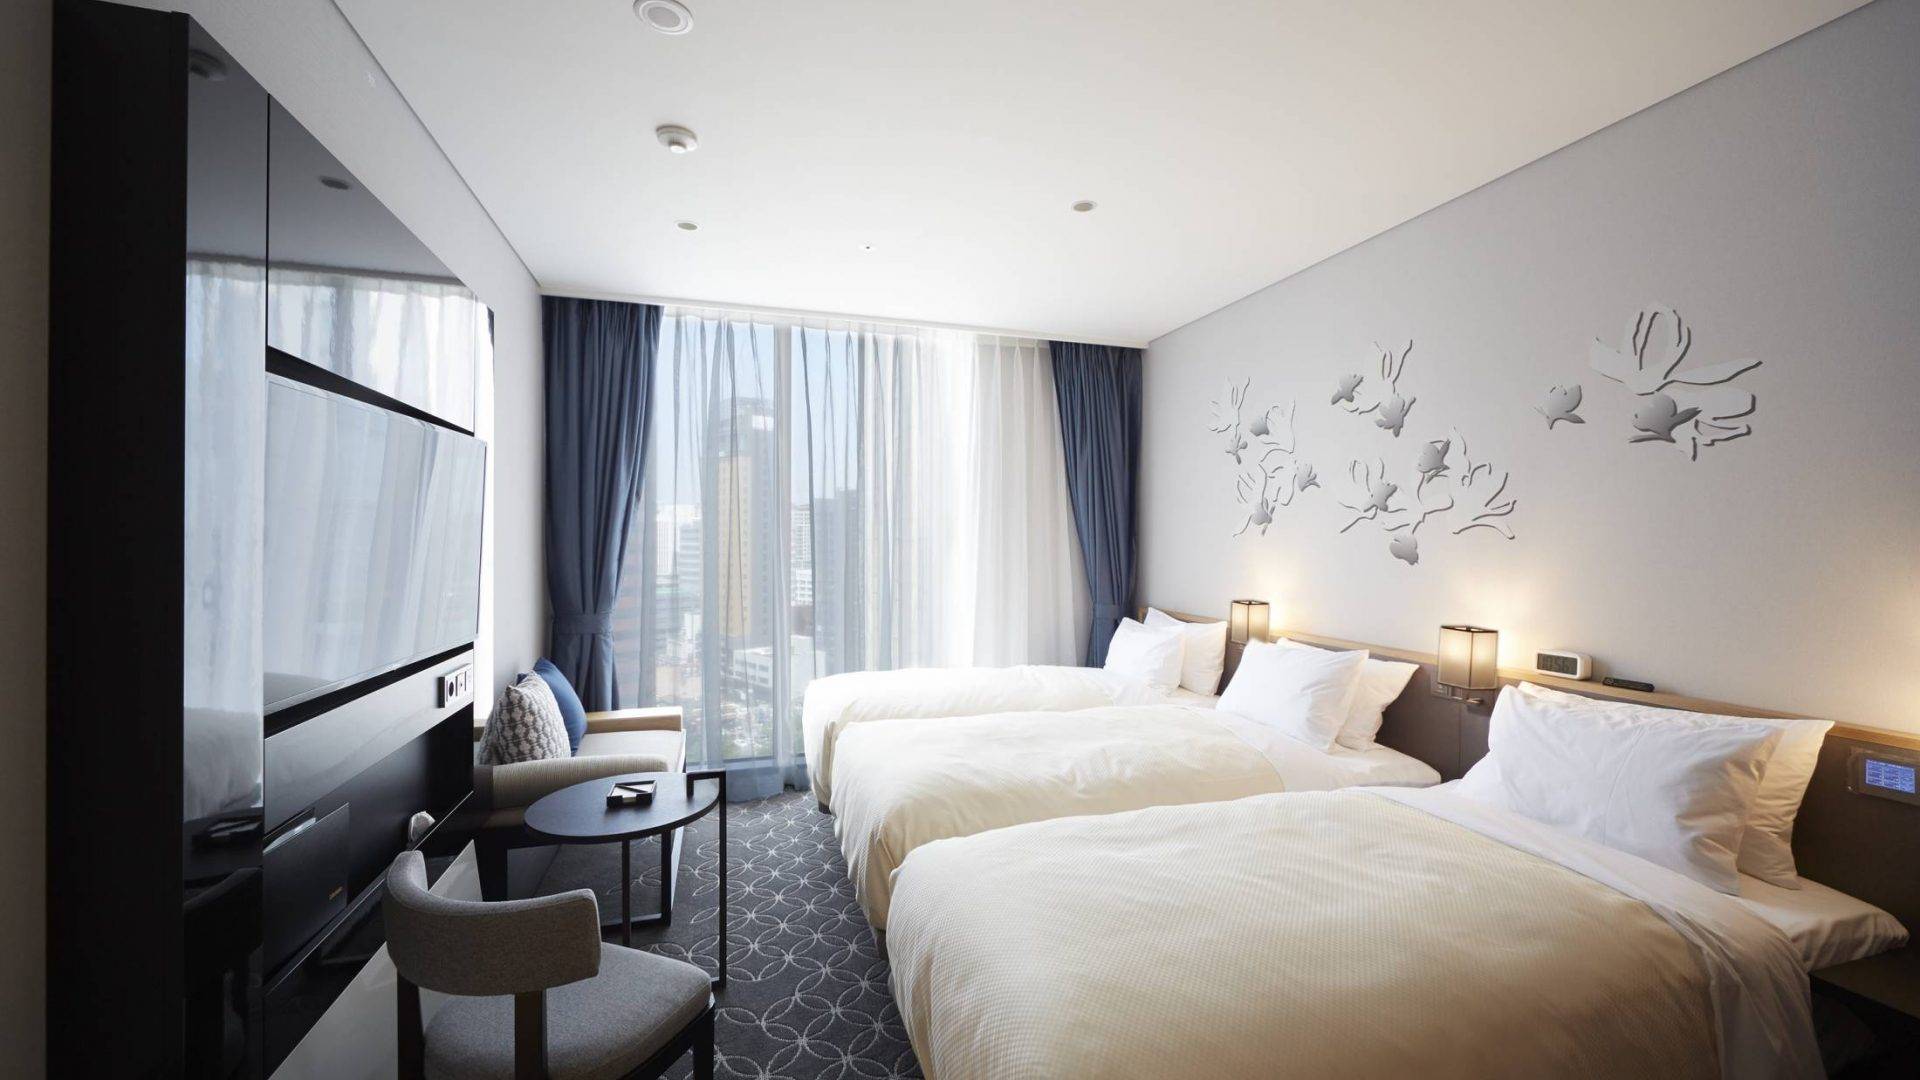 2019首爾新酒店 酒店有3人房間，3個朋友去玩的話，就最適合。